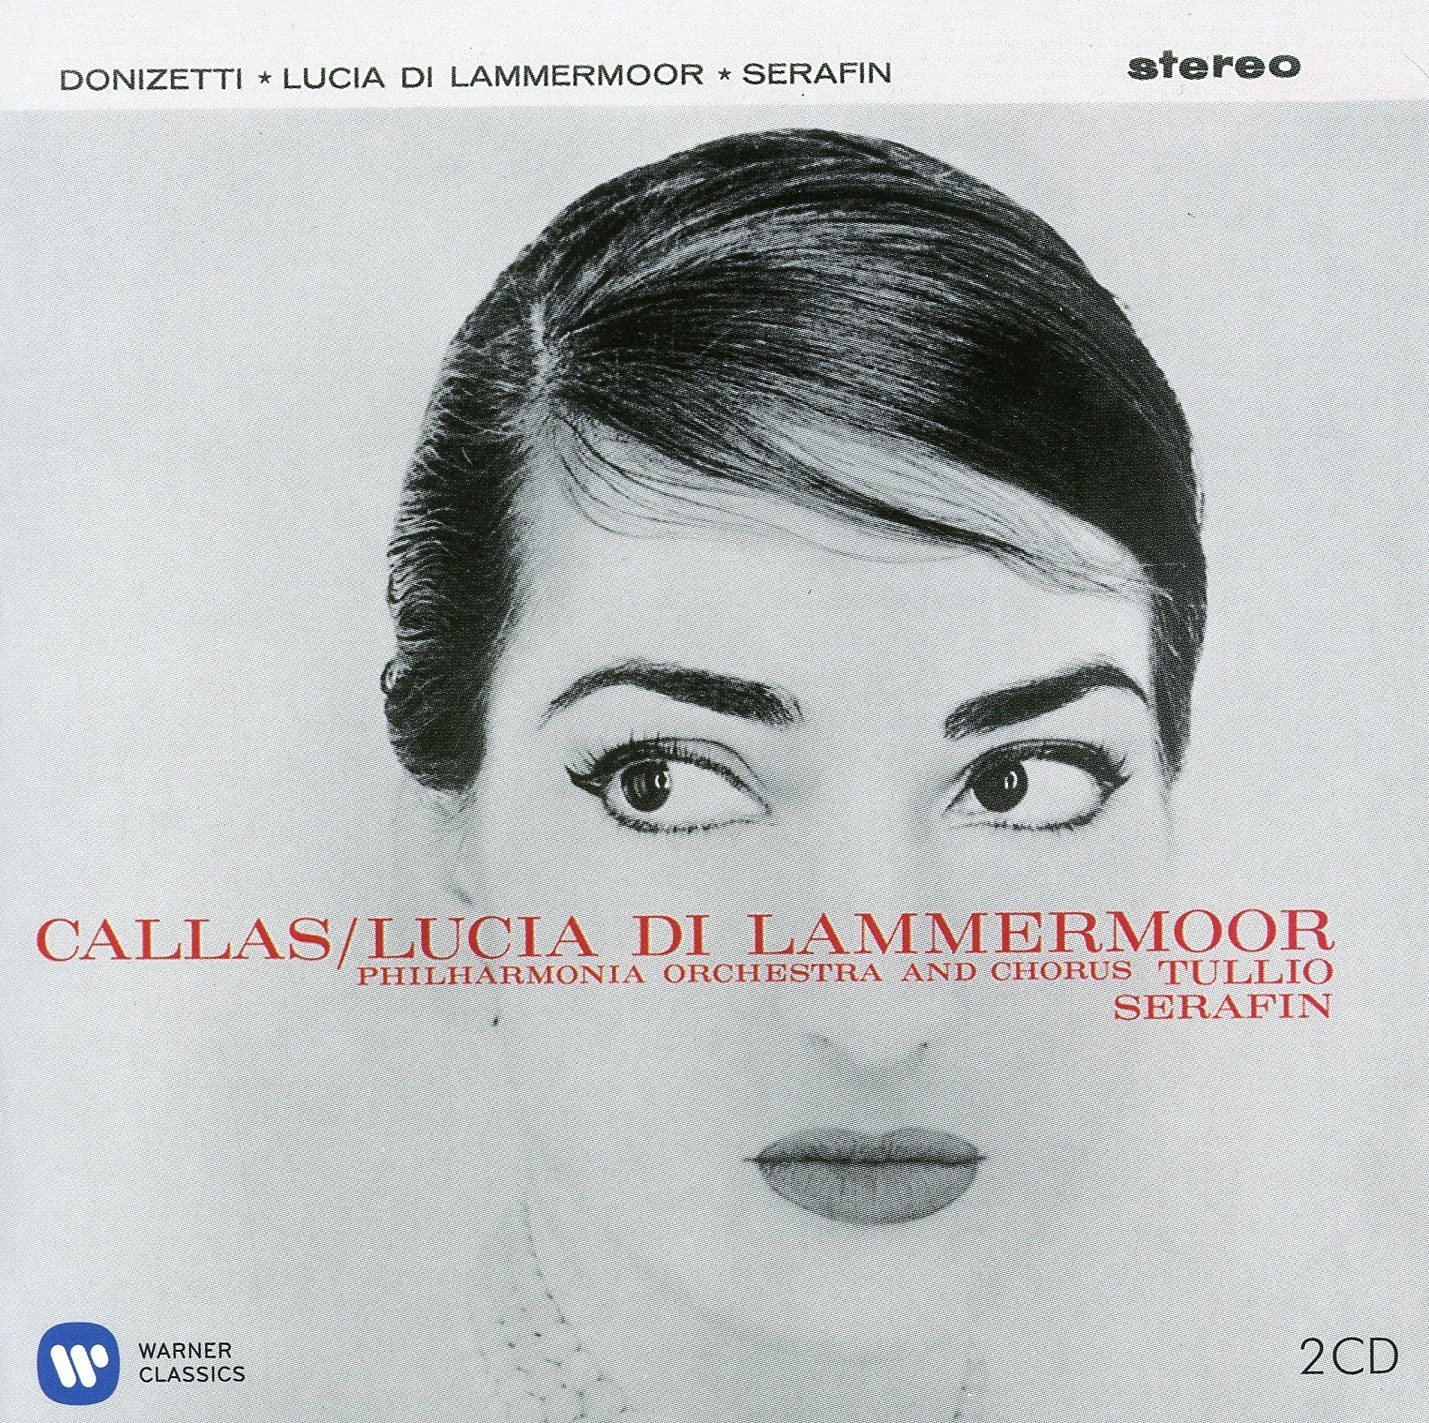 Donizetti - Lucia di Lammermoor Maria Callas Remastered | Ferruccio Tagliavini, Maria Callas